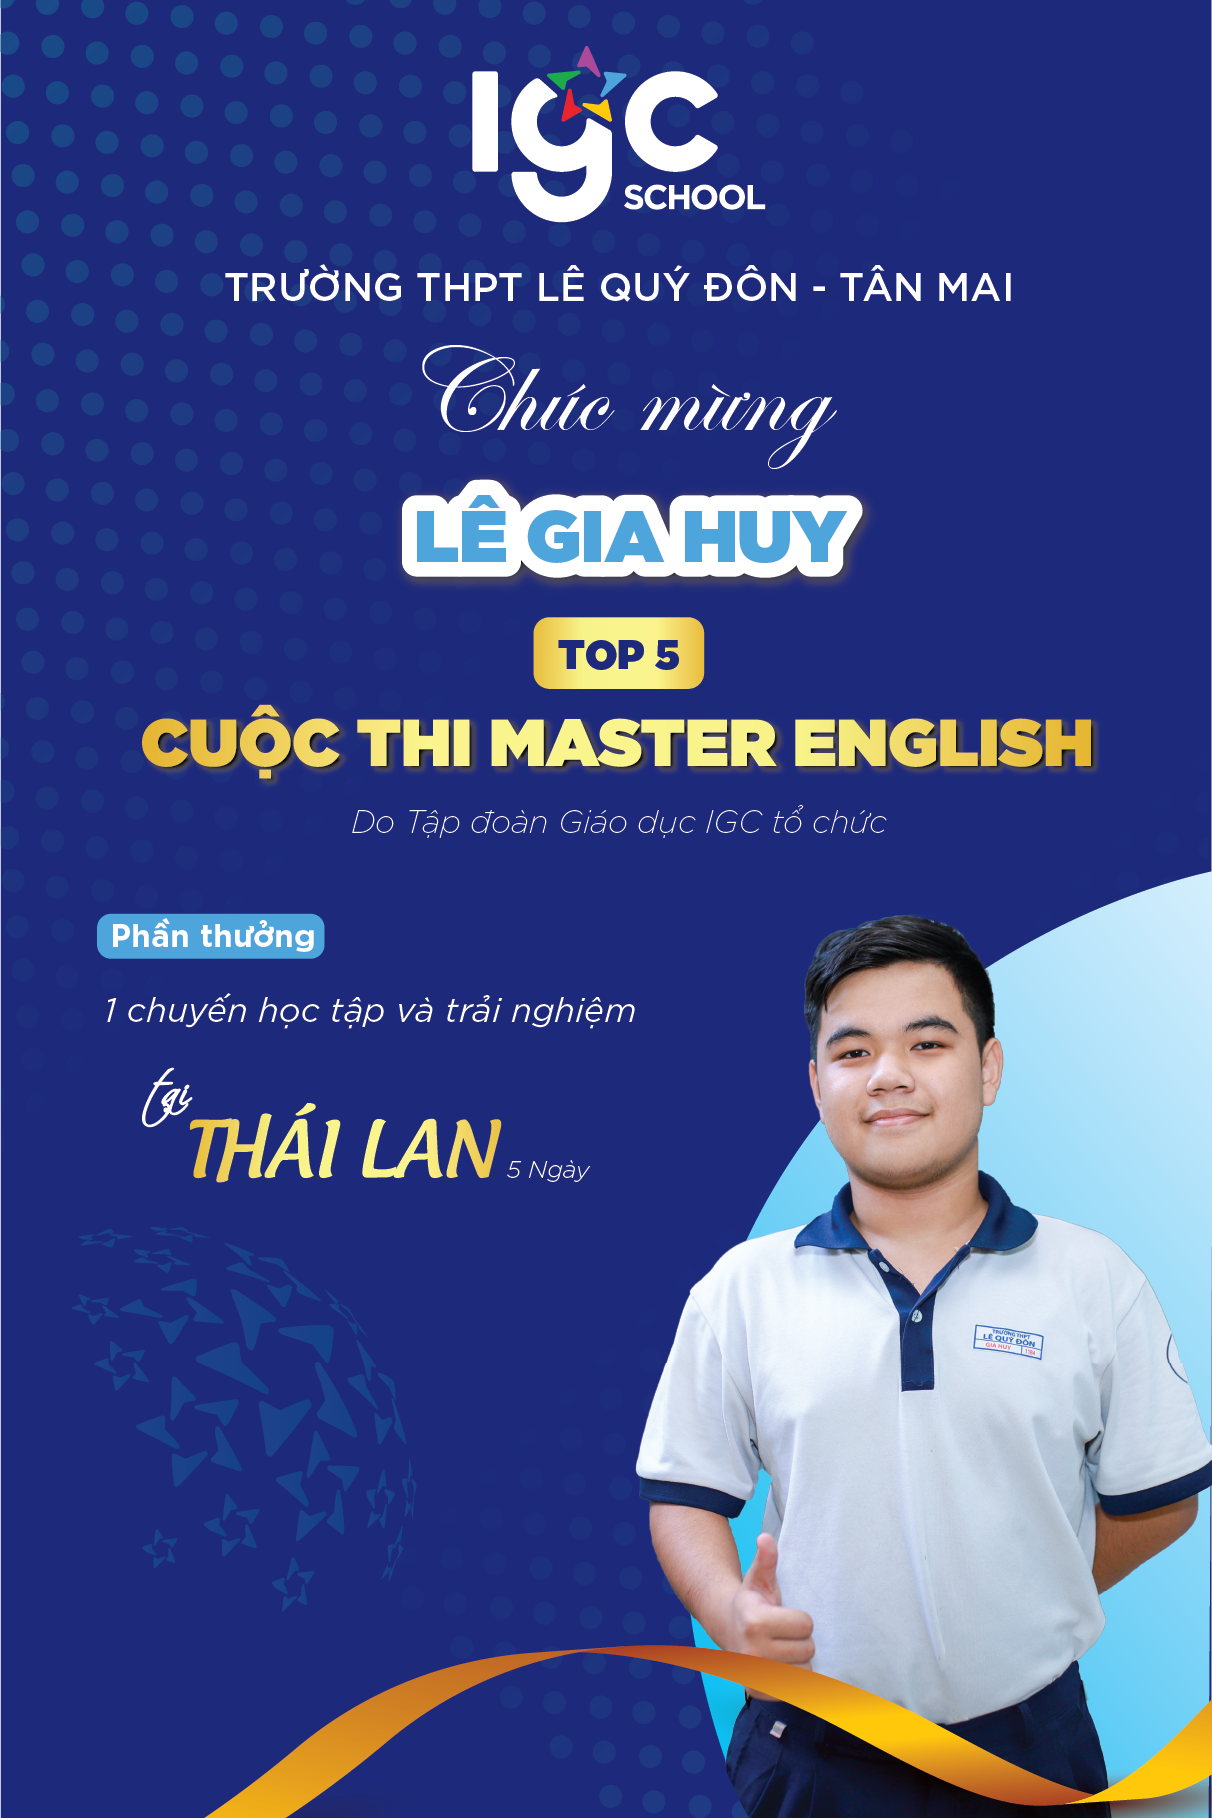 🎉Chúc mừng em Lê Gia Huy học sinh lớp 11B4 đã đạt thành tích Top 5 cuộc thi Master English do tập đoàn giáo dục IGC tổ chức.